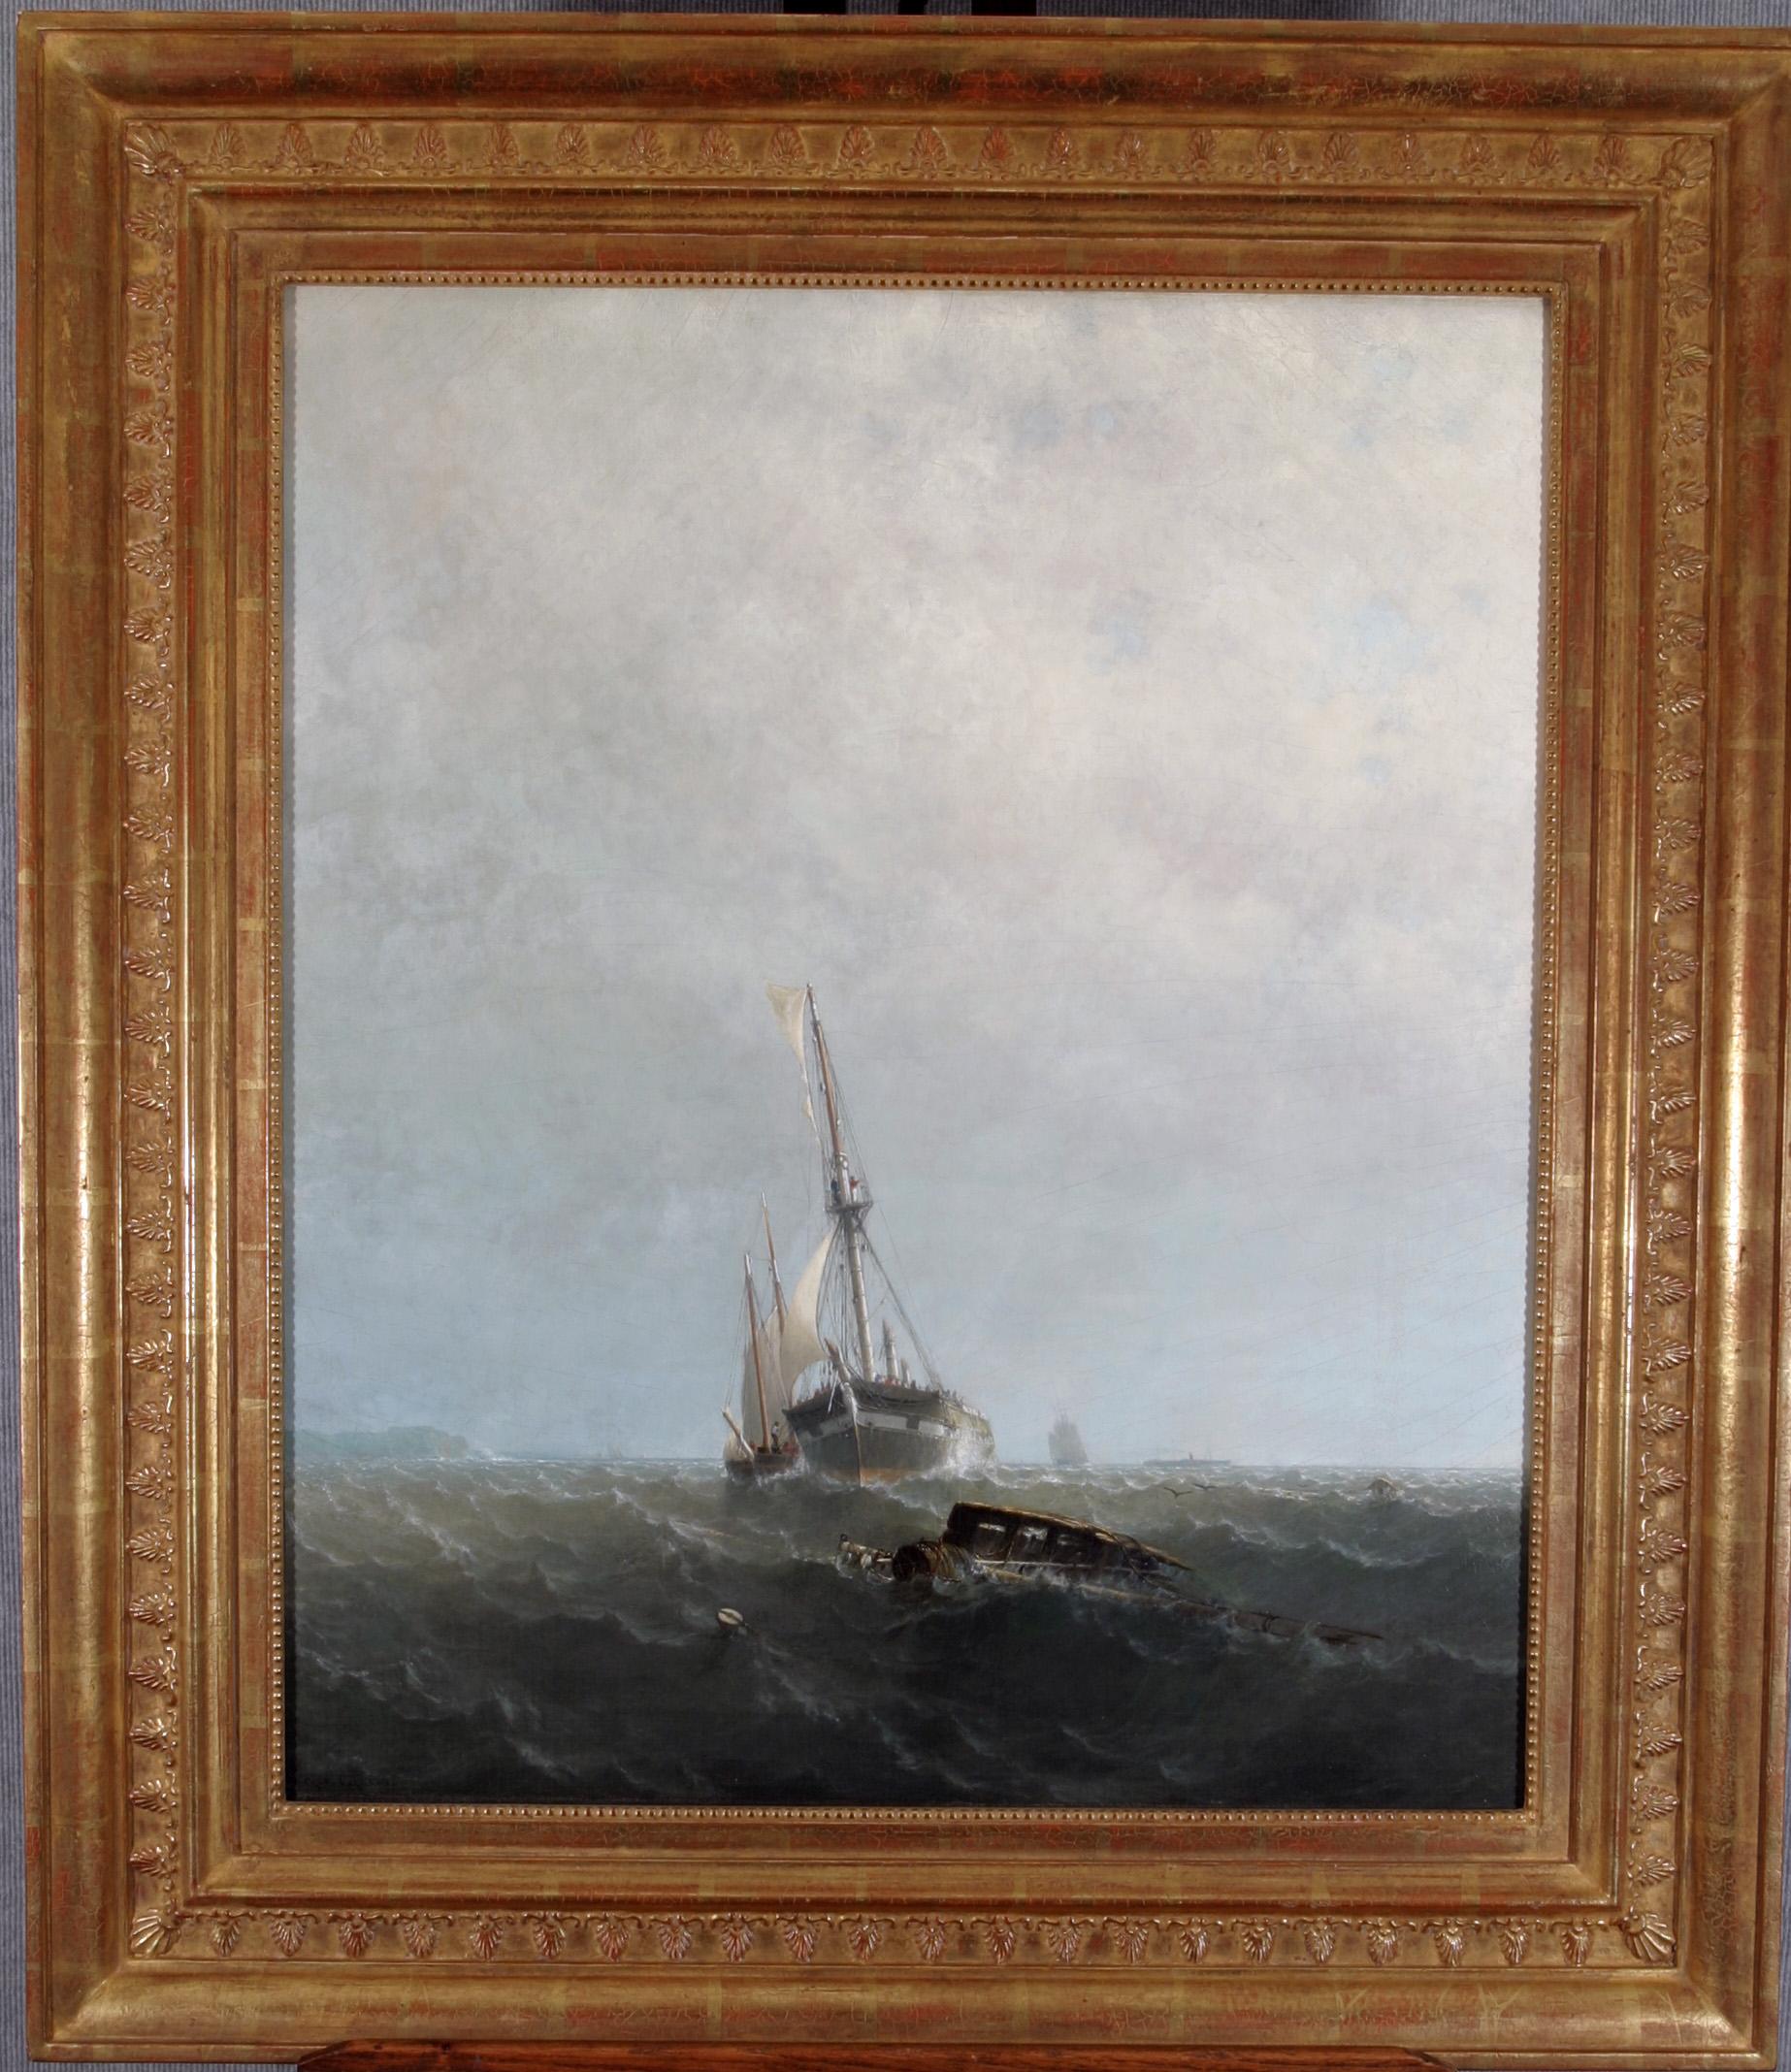 Der zerbrochene Mast – Painting von George Curtis